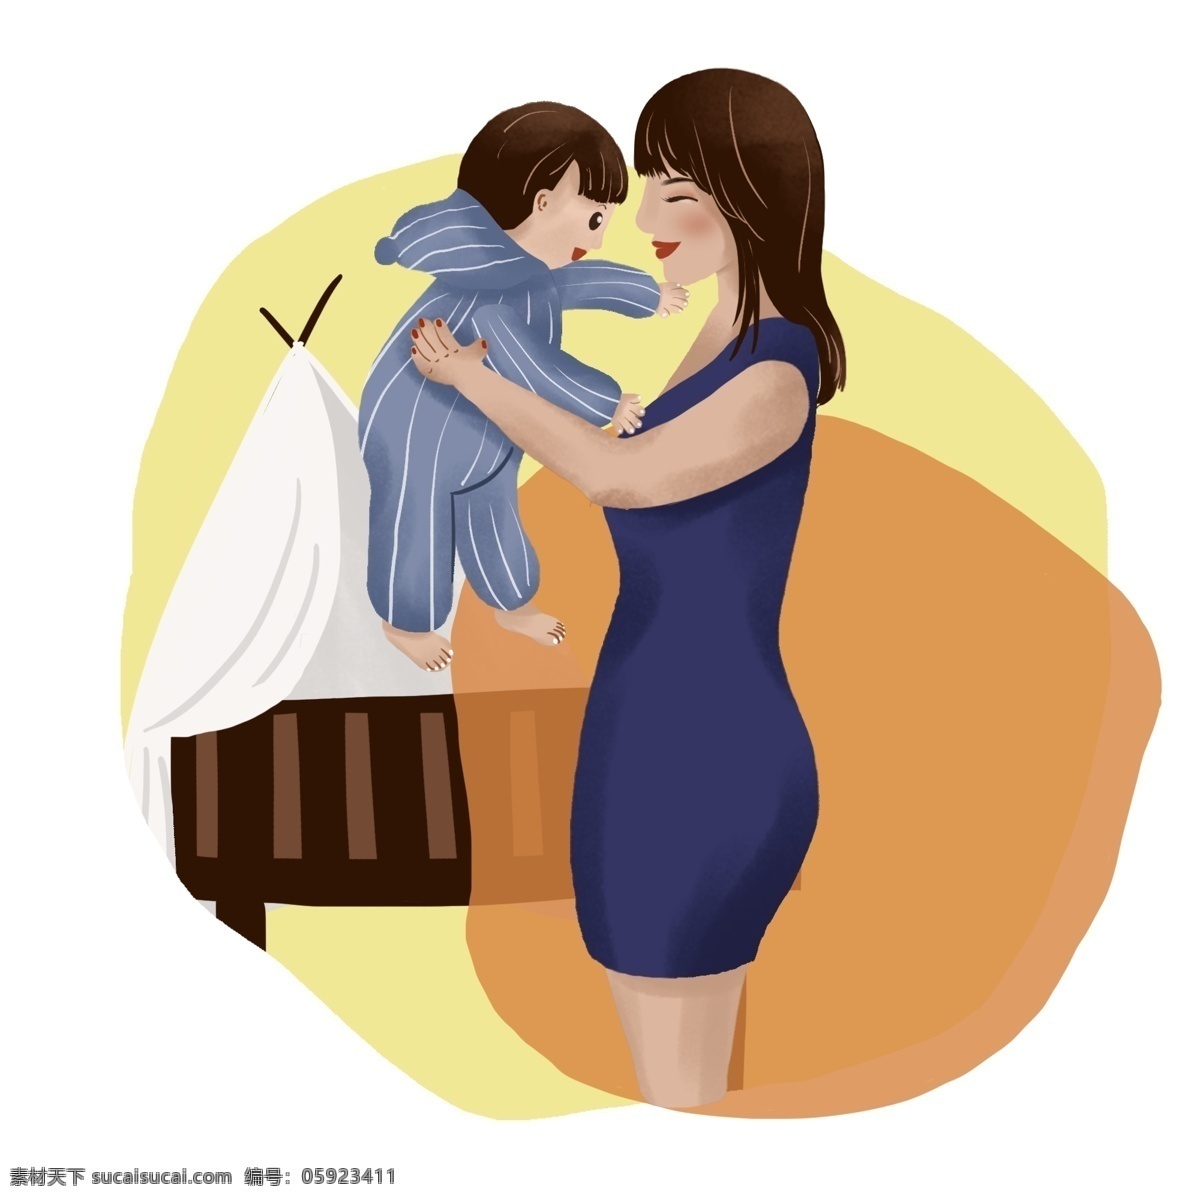 母亲节 妈妈 抱 孩子 画面 手绘 元素 宝宝 有爱 温暖 幸福 开心 爱 婴儿 婴儿床 母亲 拥抱 陪伴 呵护 成长